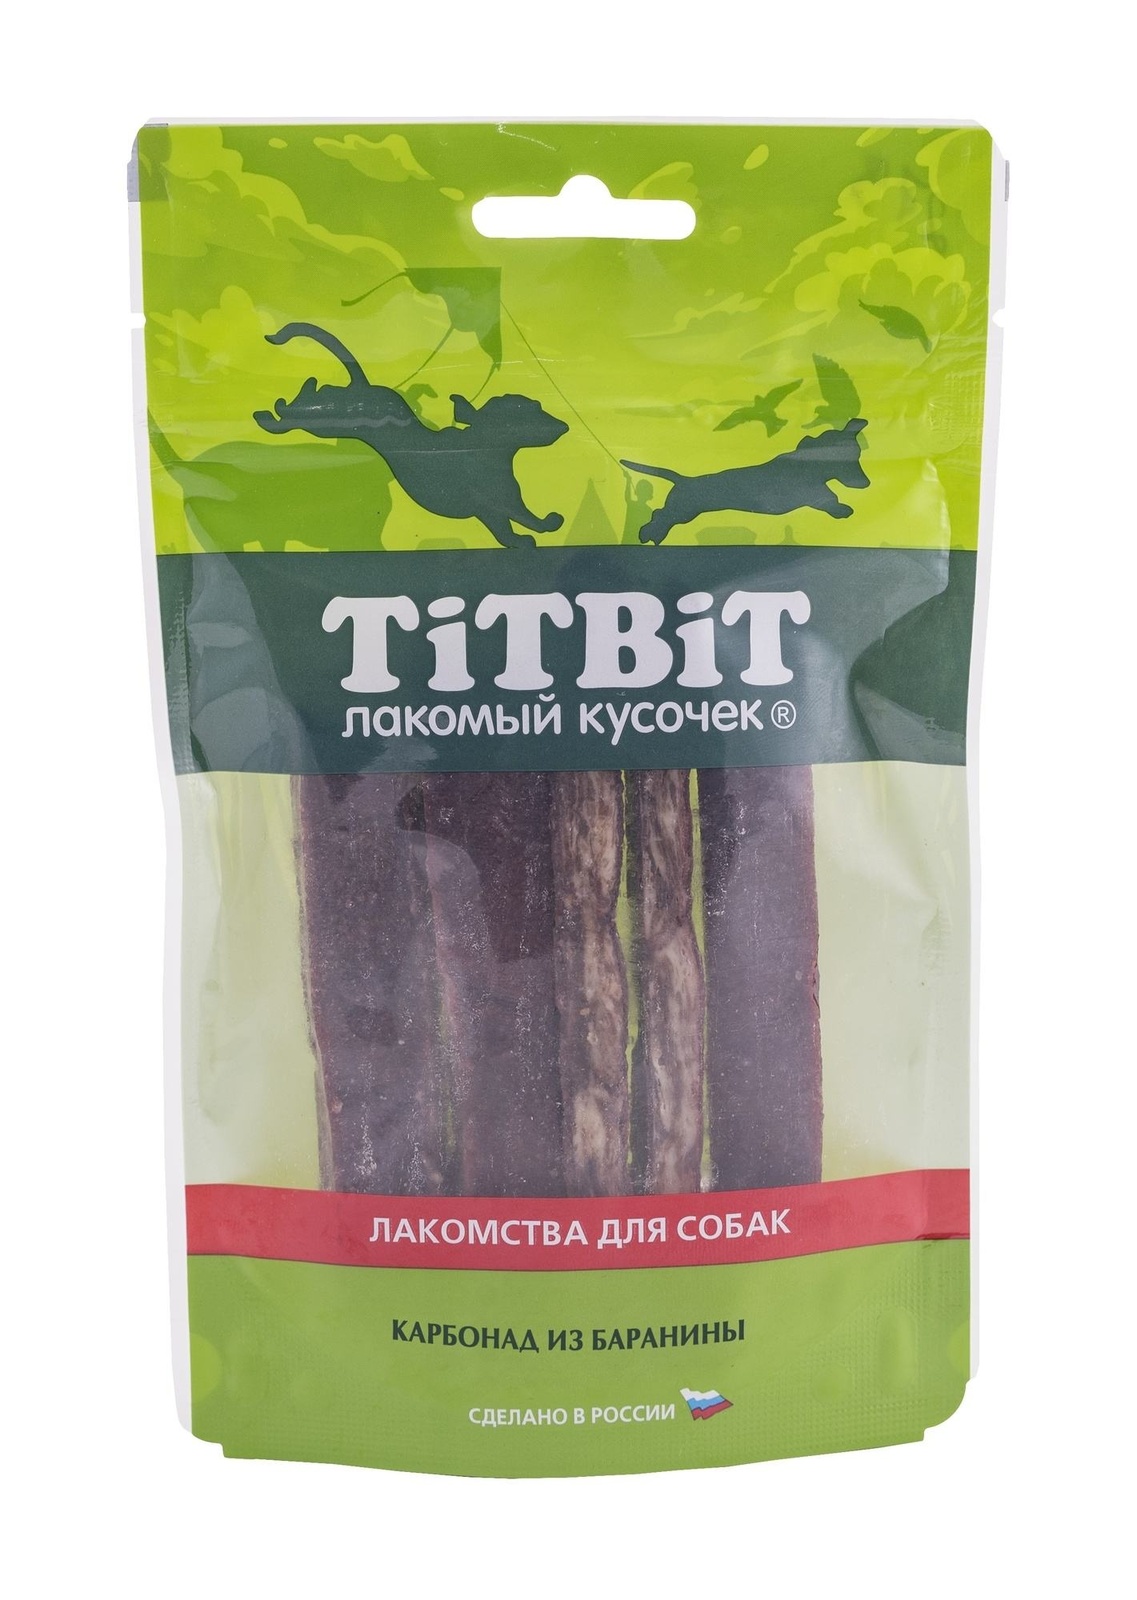 TiTBiT TiTBiT золотая коллекция Карбонад из баранины для собак (70 г) titbit карбонад из баранины для собак золотая коллекция 70 г